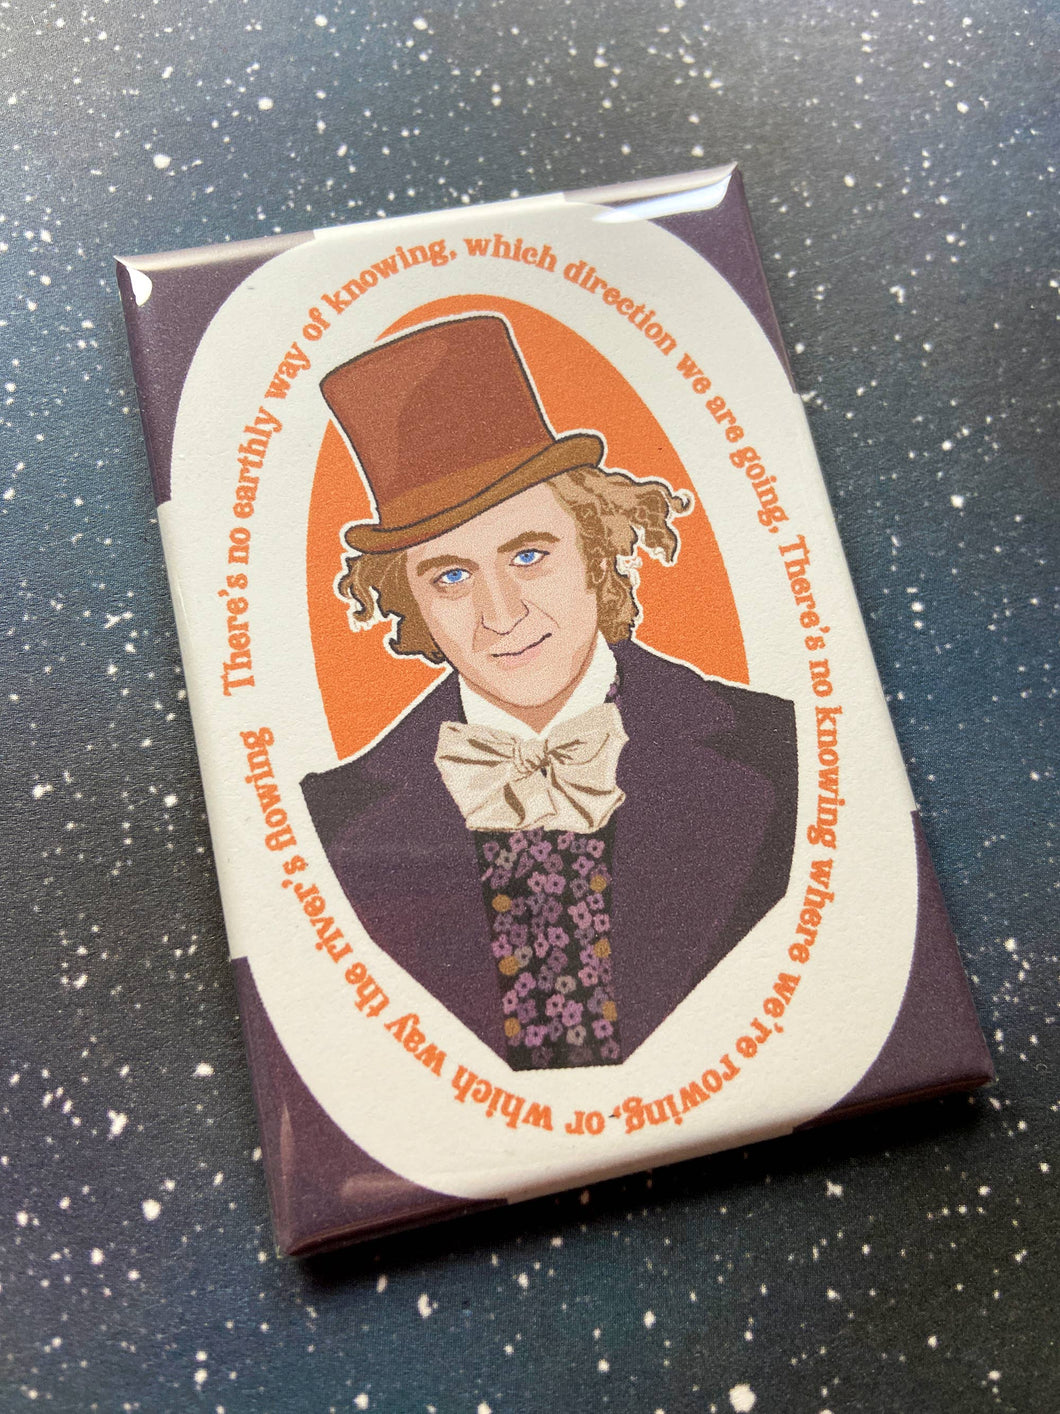 Willy Wonka Souvenir Magnet - Gene Wilder